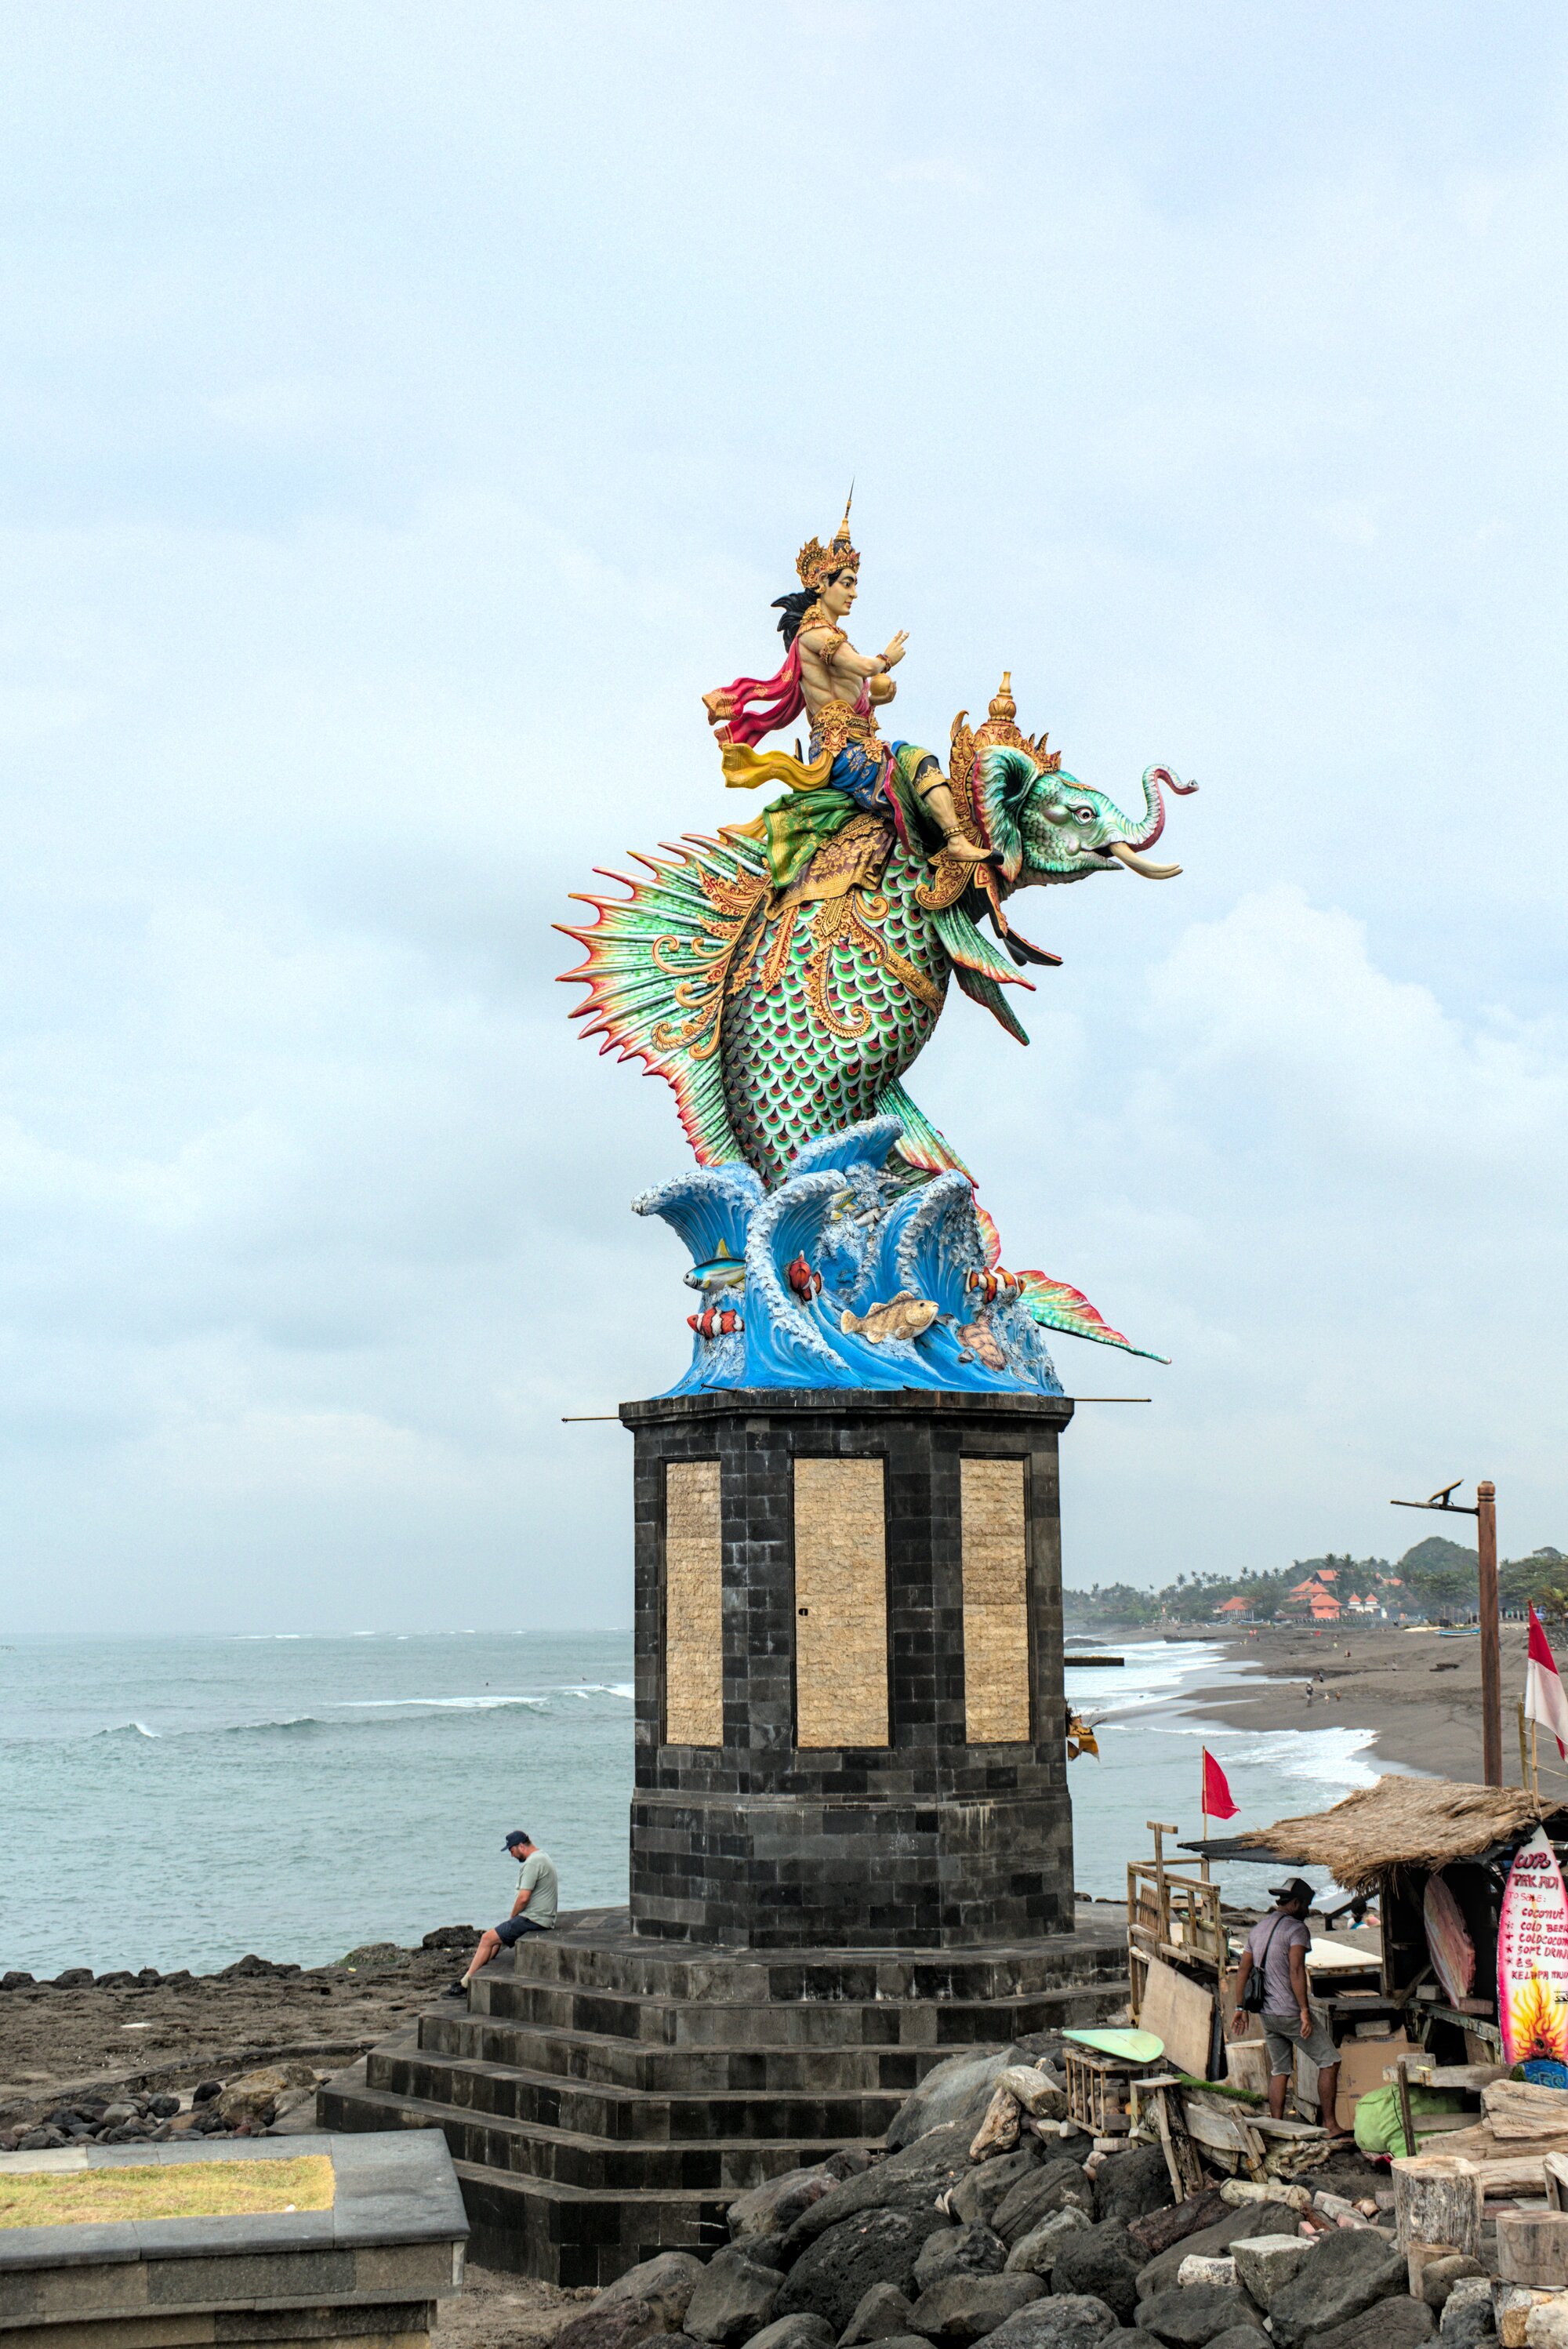 Giant gilded statue on a beach, presumably a Hindu deity.